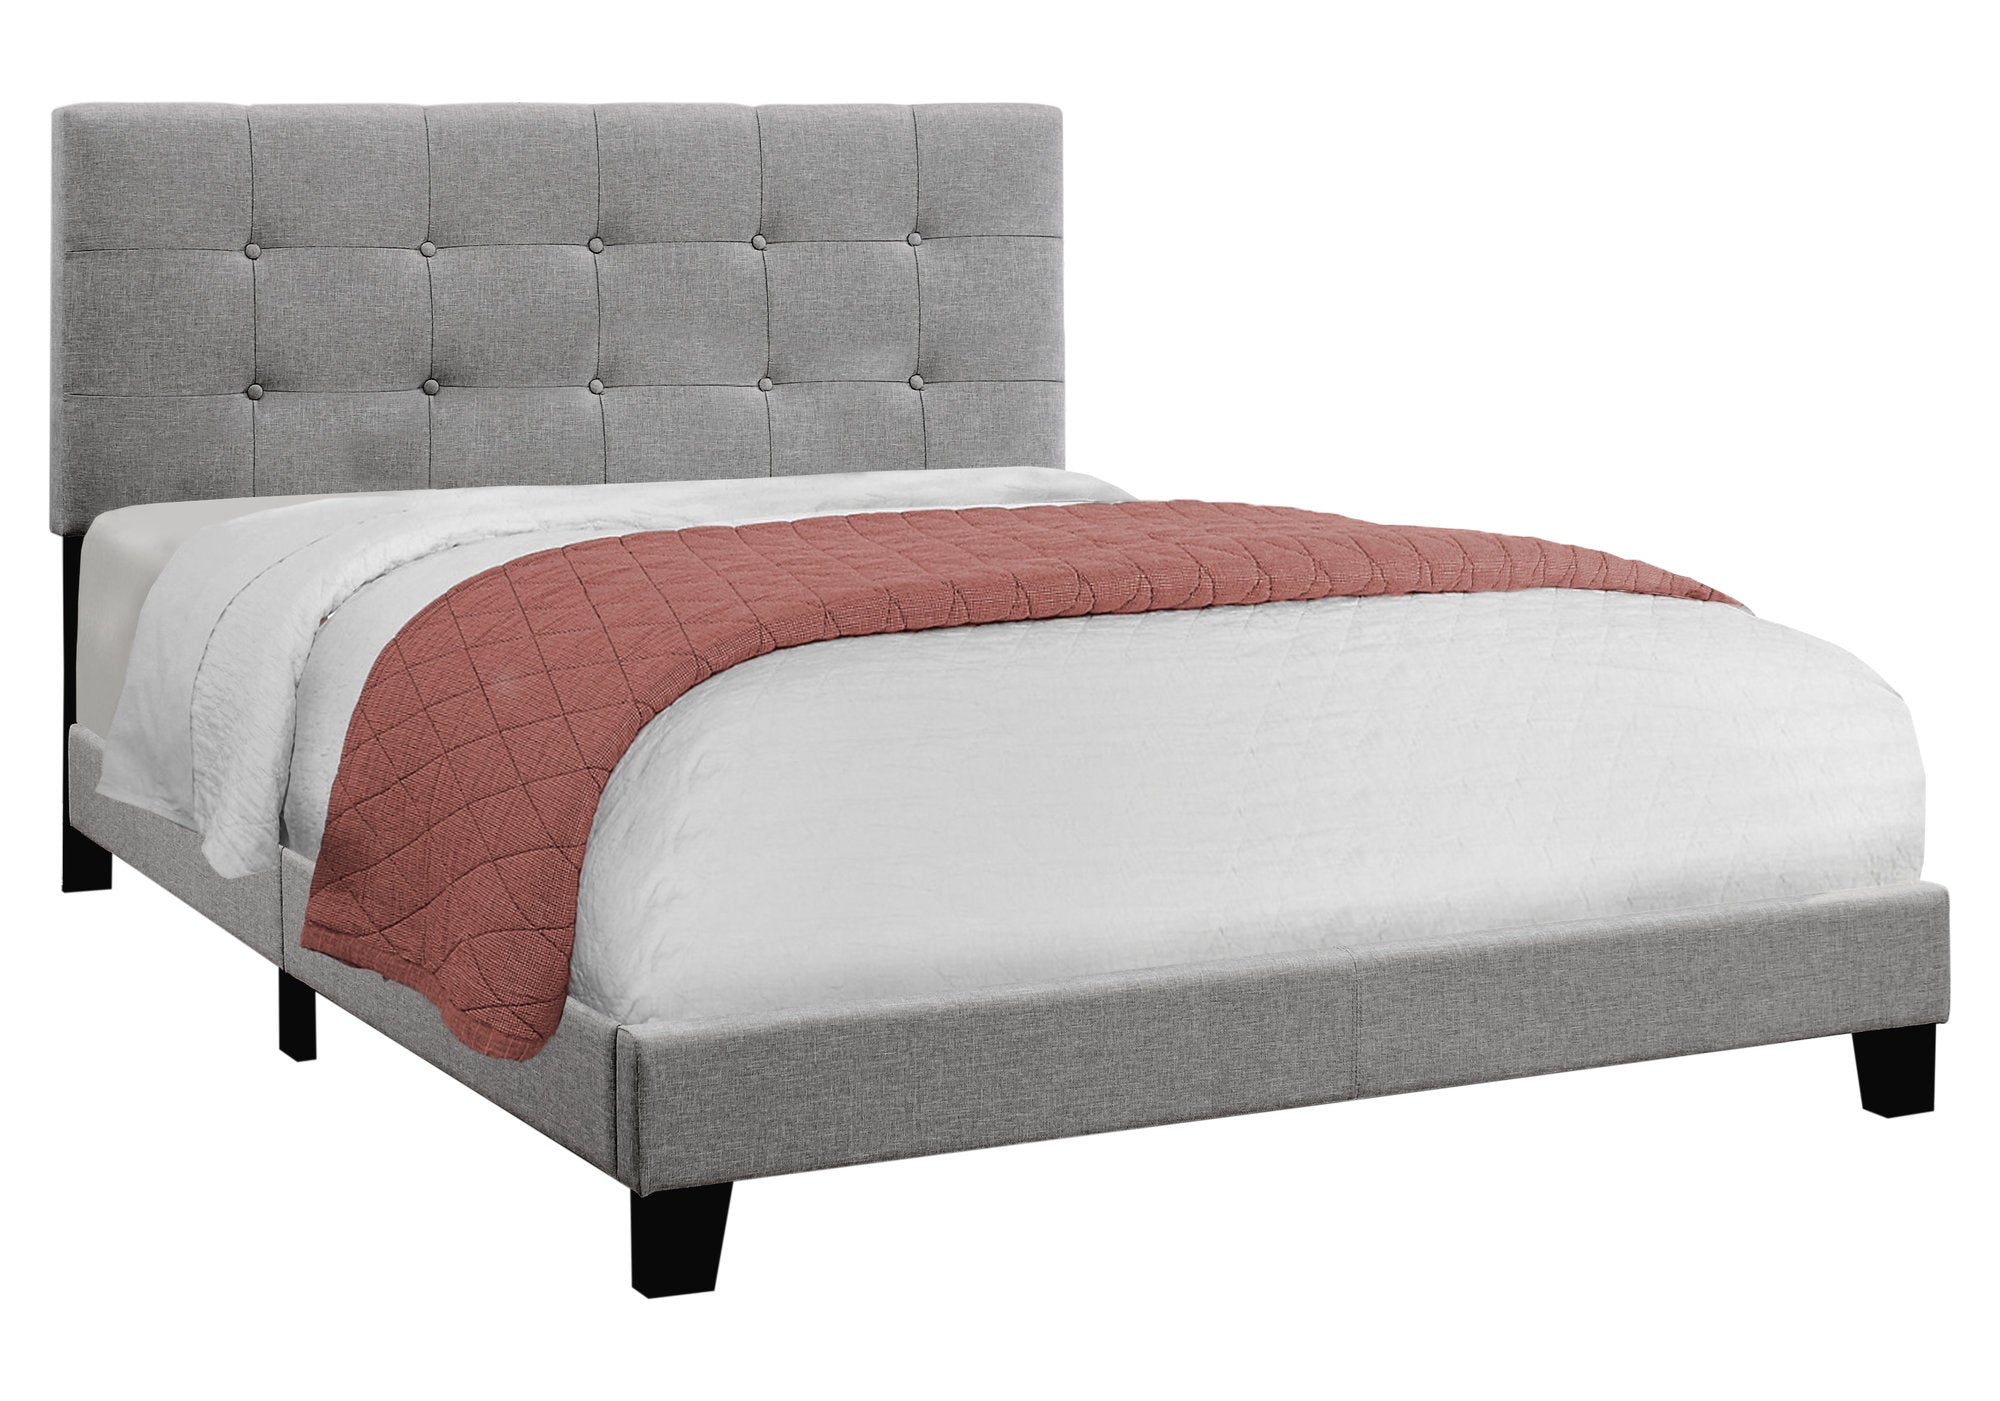 64.25" x 85.25" x 45" Beige Linen - Queen Size Bed